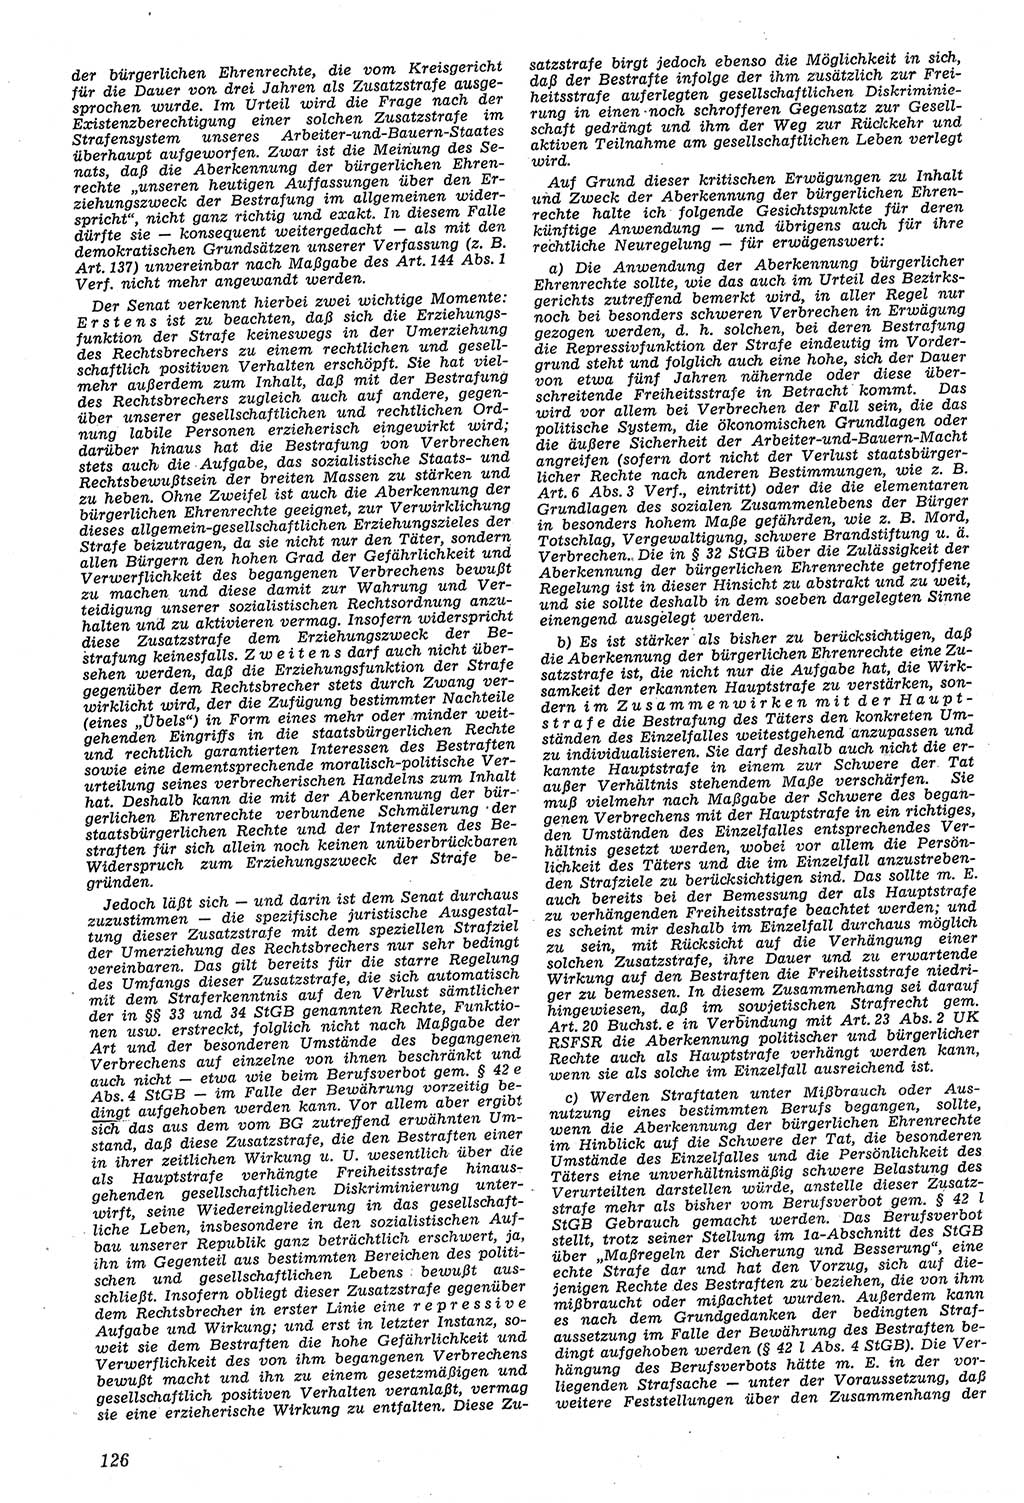 Neue Justiz (NJ), Zeitschrift für Recht und Rechtswissenschaft [Deutsche Demokratische Republik (DDR)], 11. Jahrgang 1957, Seite 126 (NJ DDR 1957, S. 126)